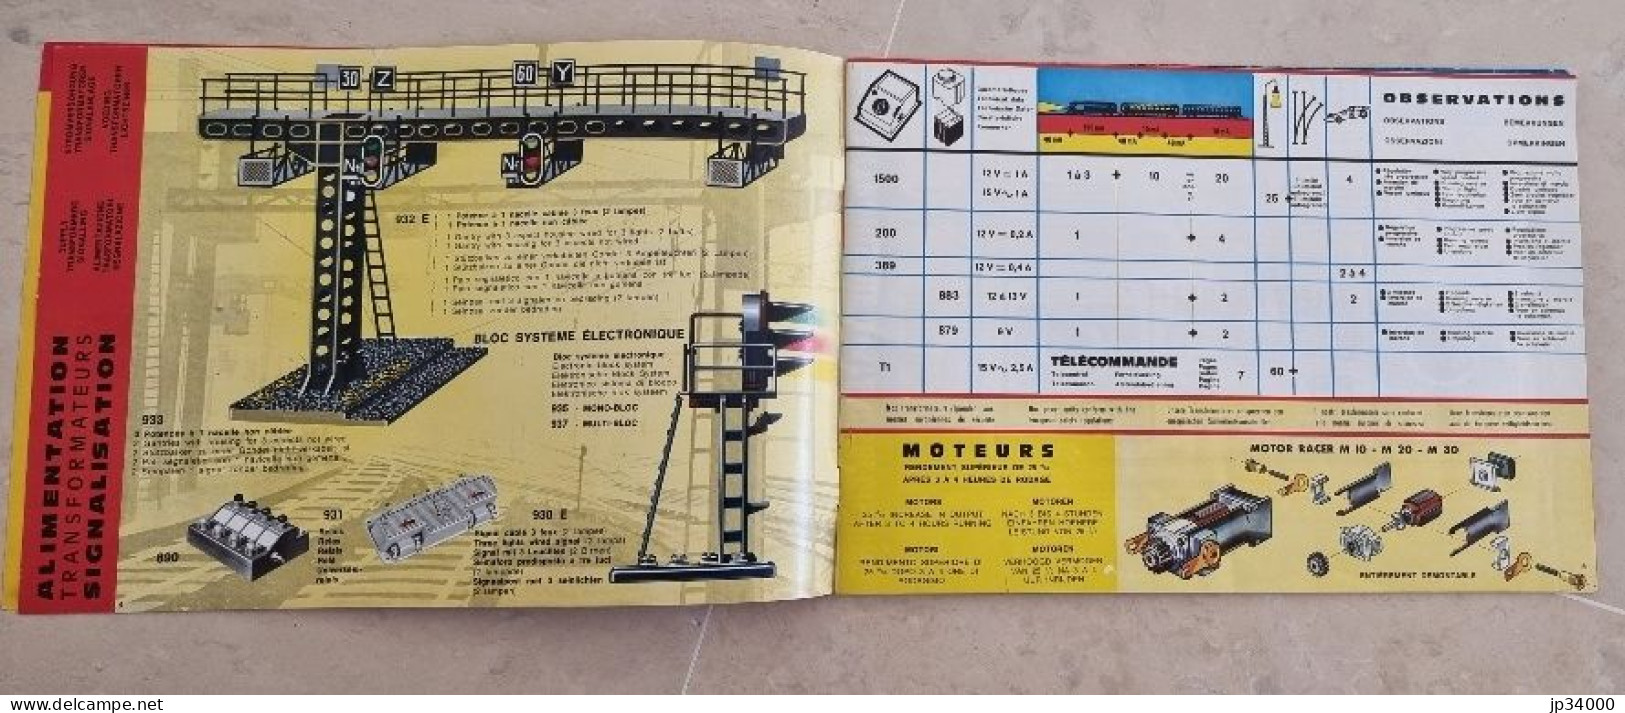 TELECOMMANDE ELECTRONIQUE (Jouef HO) Complet 32 Pages, 1969-70 (Trains Electriques) - Littérature & DVD